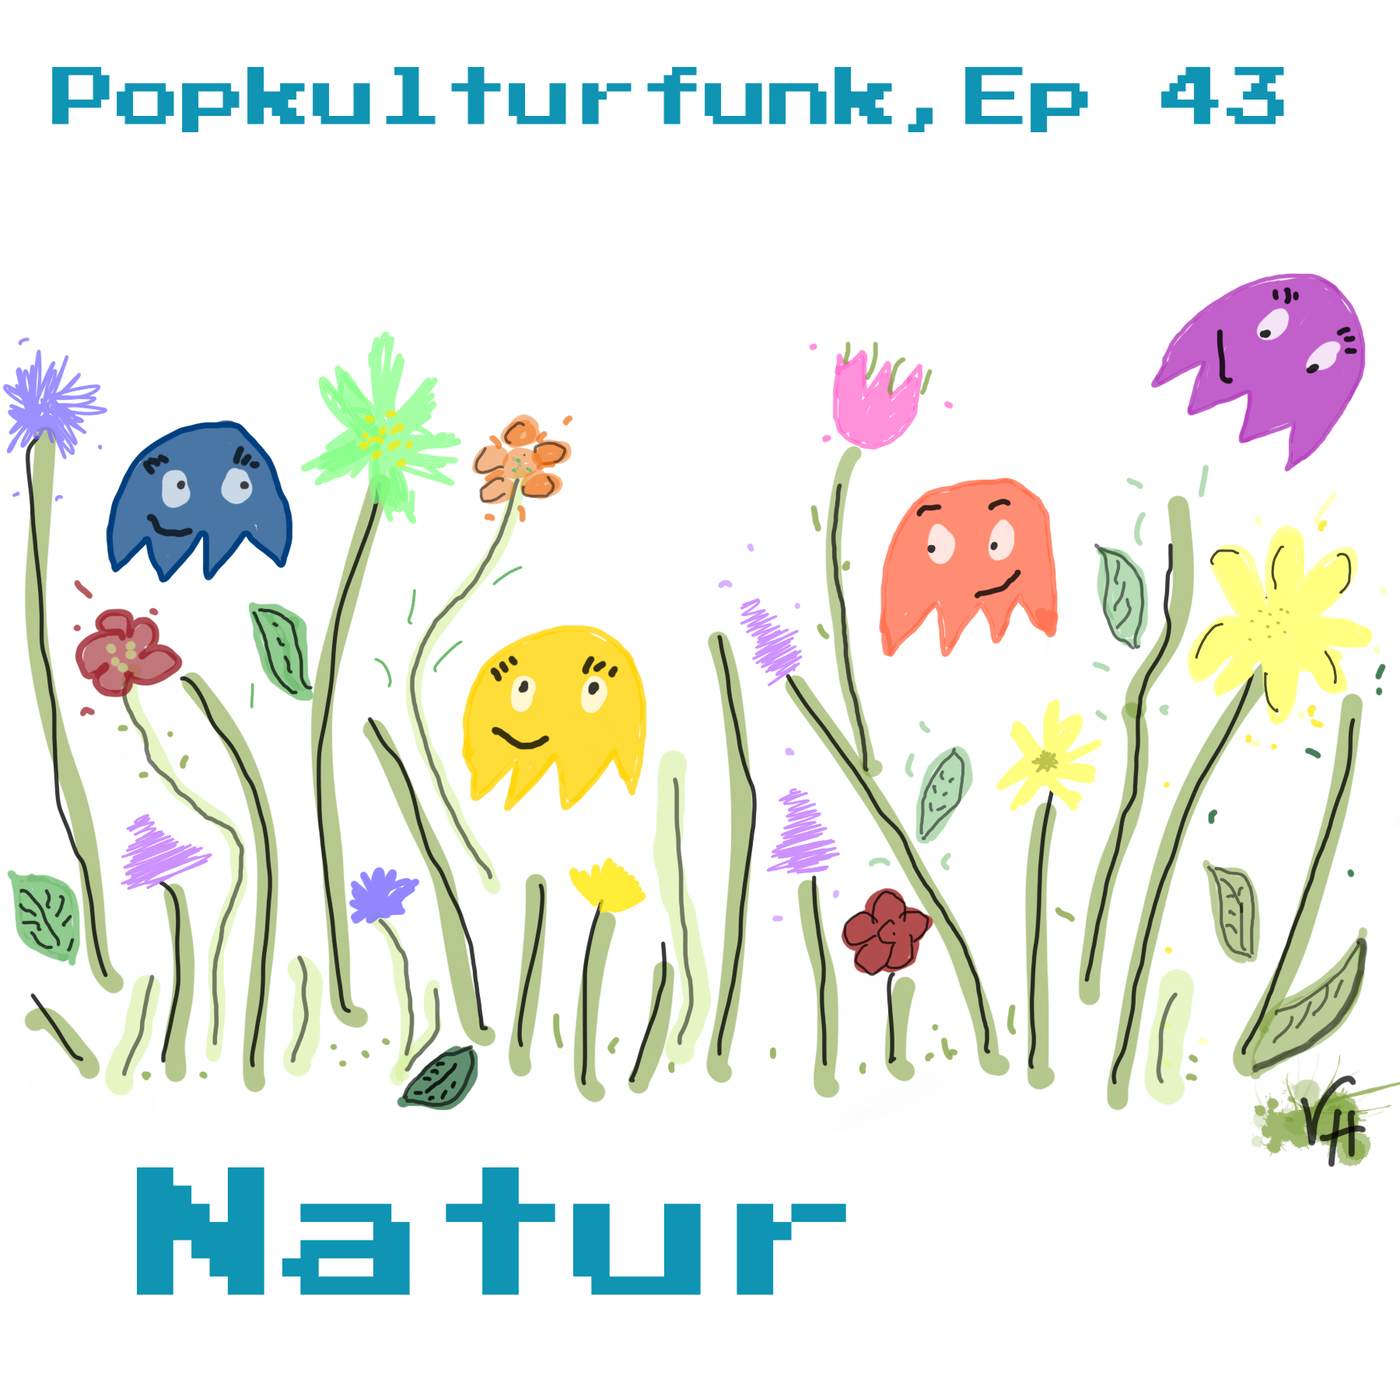 Episode 43: Natur